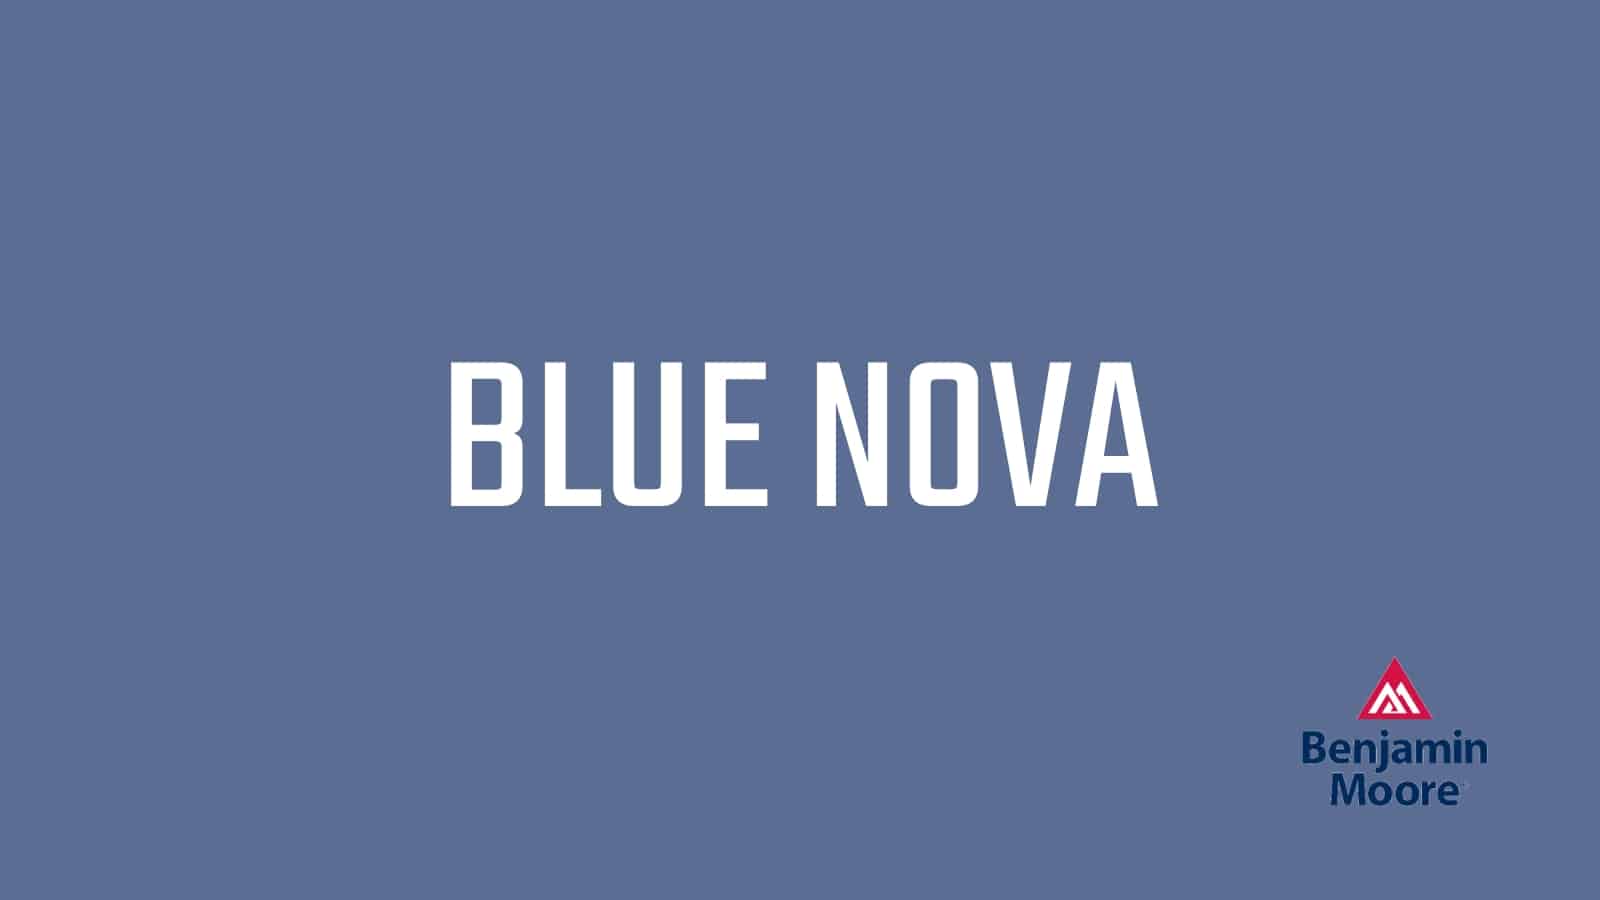 Benjamin Moore Blue Nova